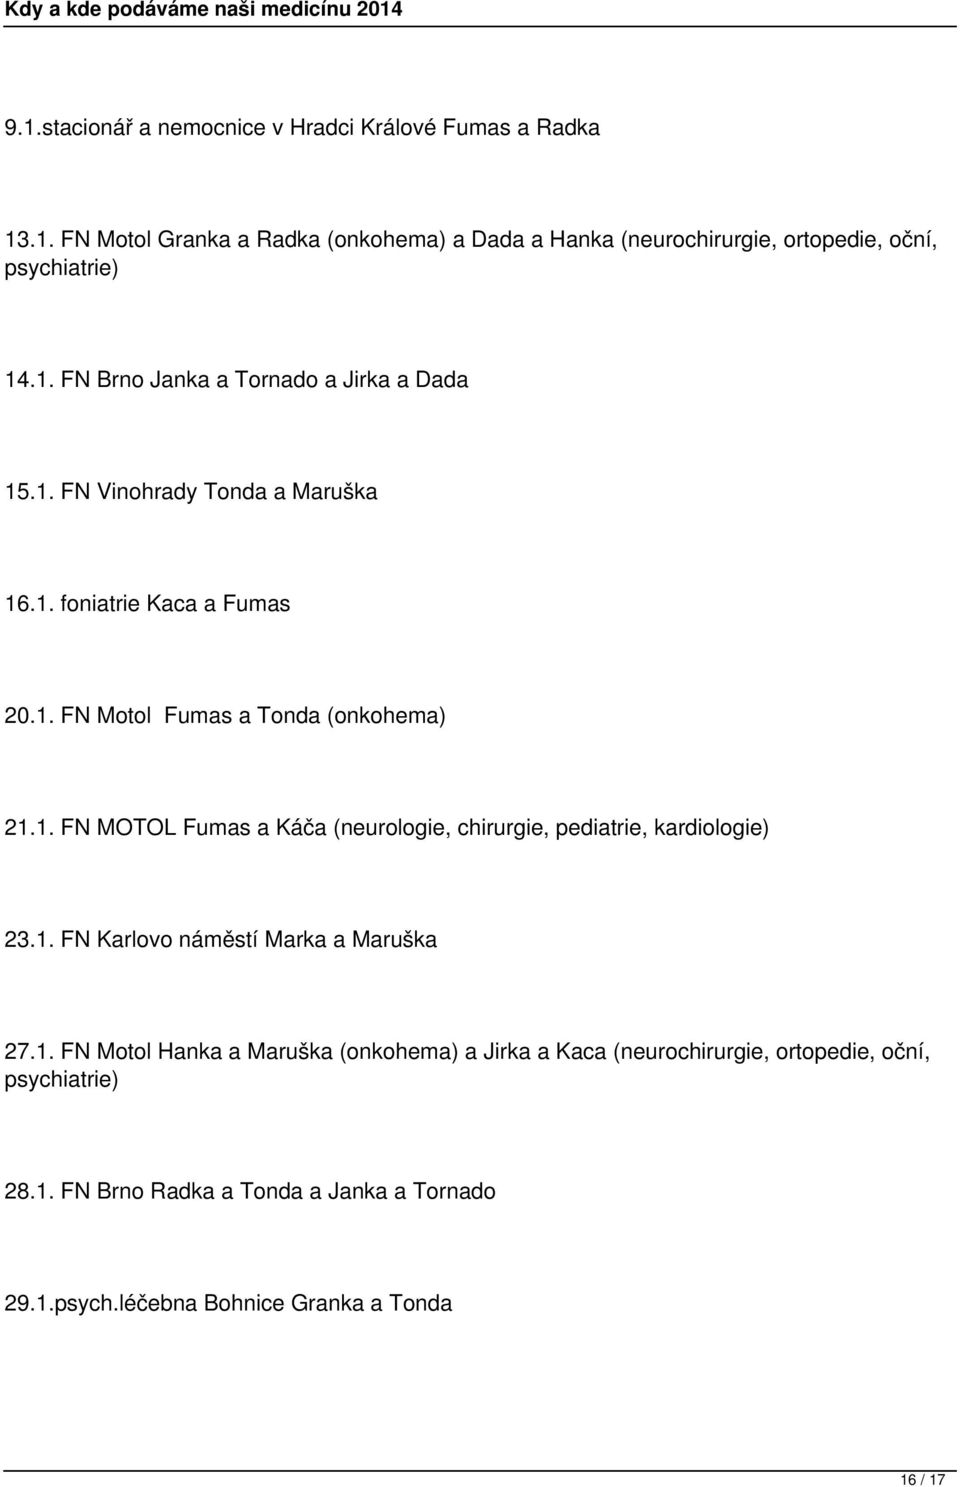 1. FN Karlovo náměstí Marka a Maruška 27.1. FN Motol Hanka a Maruška (onkohema) a Jirka a Kaca (neurochirurgie, ortopedie, oční, psychiatrie) 28.1. FN Brno Radka a Tonda a Janka a Tornado 29.